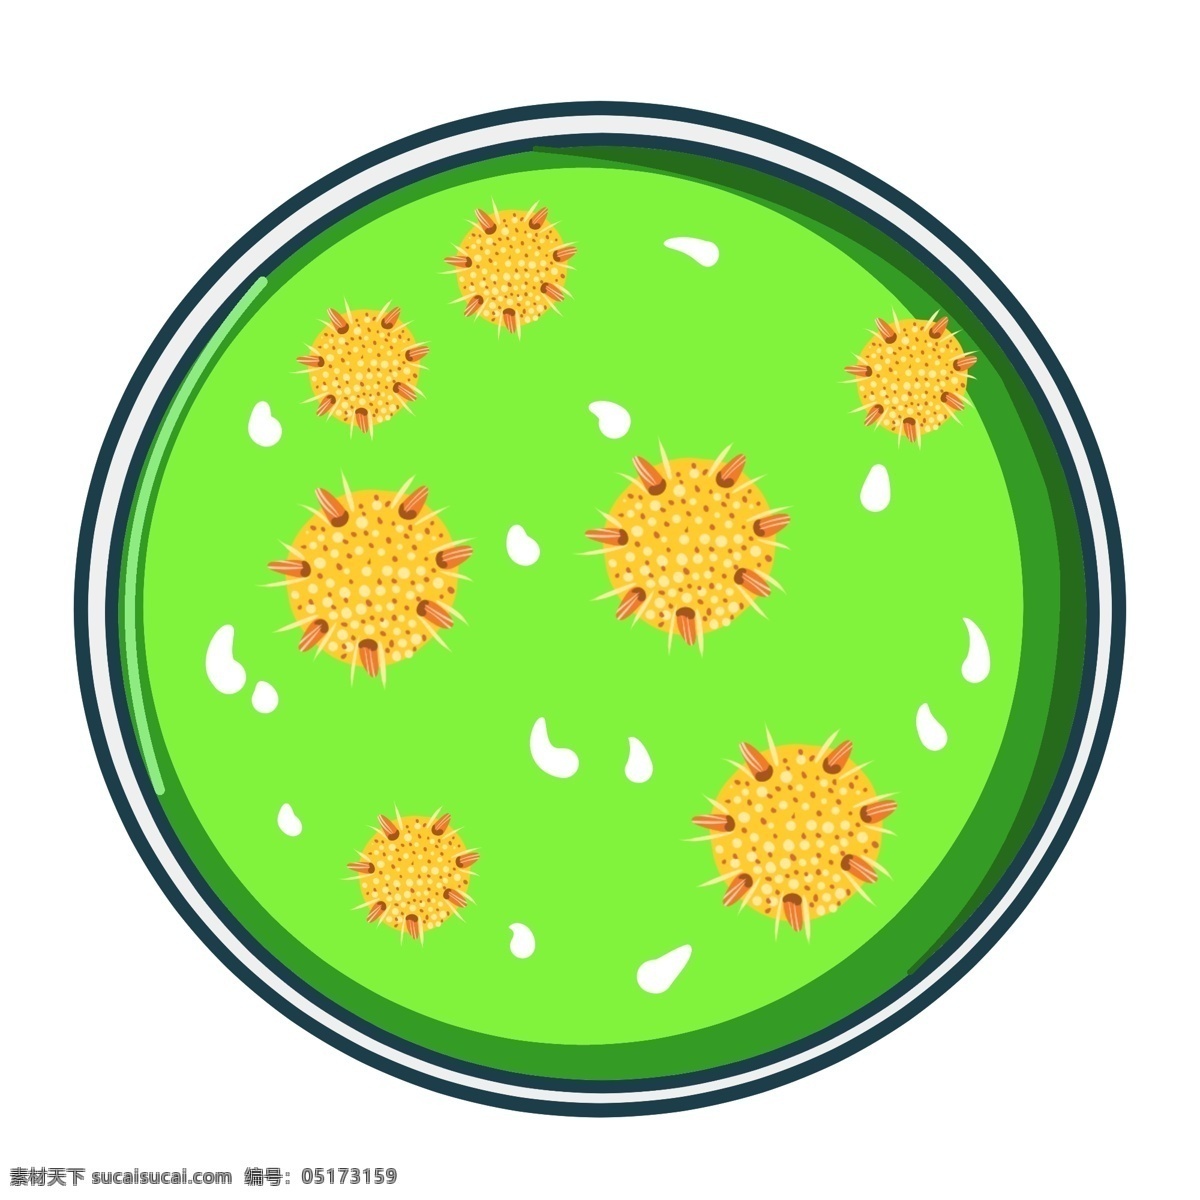 病毒 感染 细菌 细菌和真菌 菌落 培养皿病毒 绿色病毒插画 细胞 病毒感染 细菌感染插画 培养血